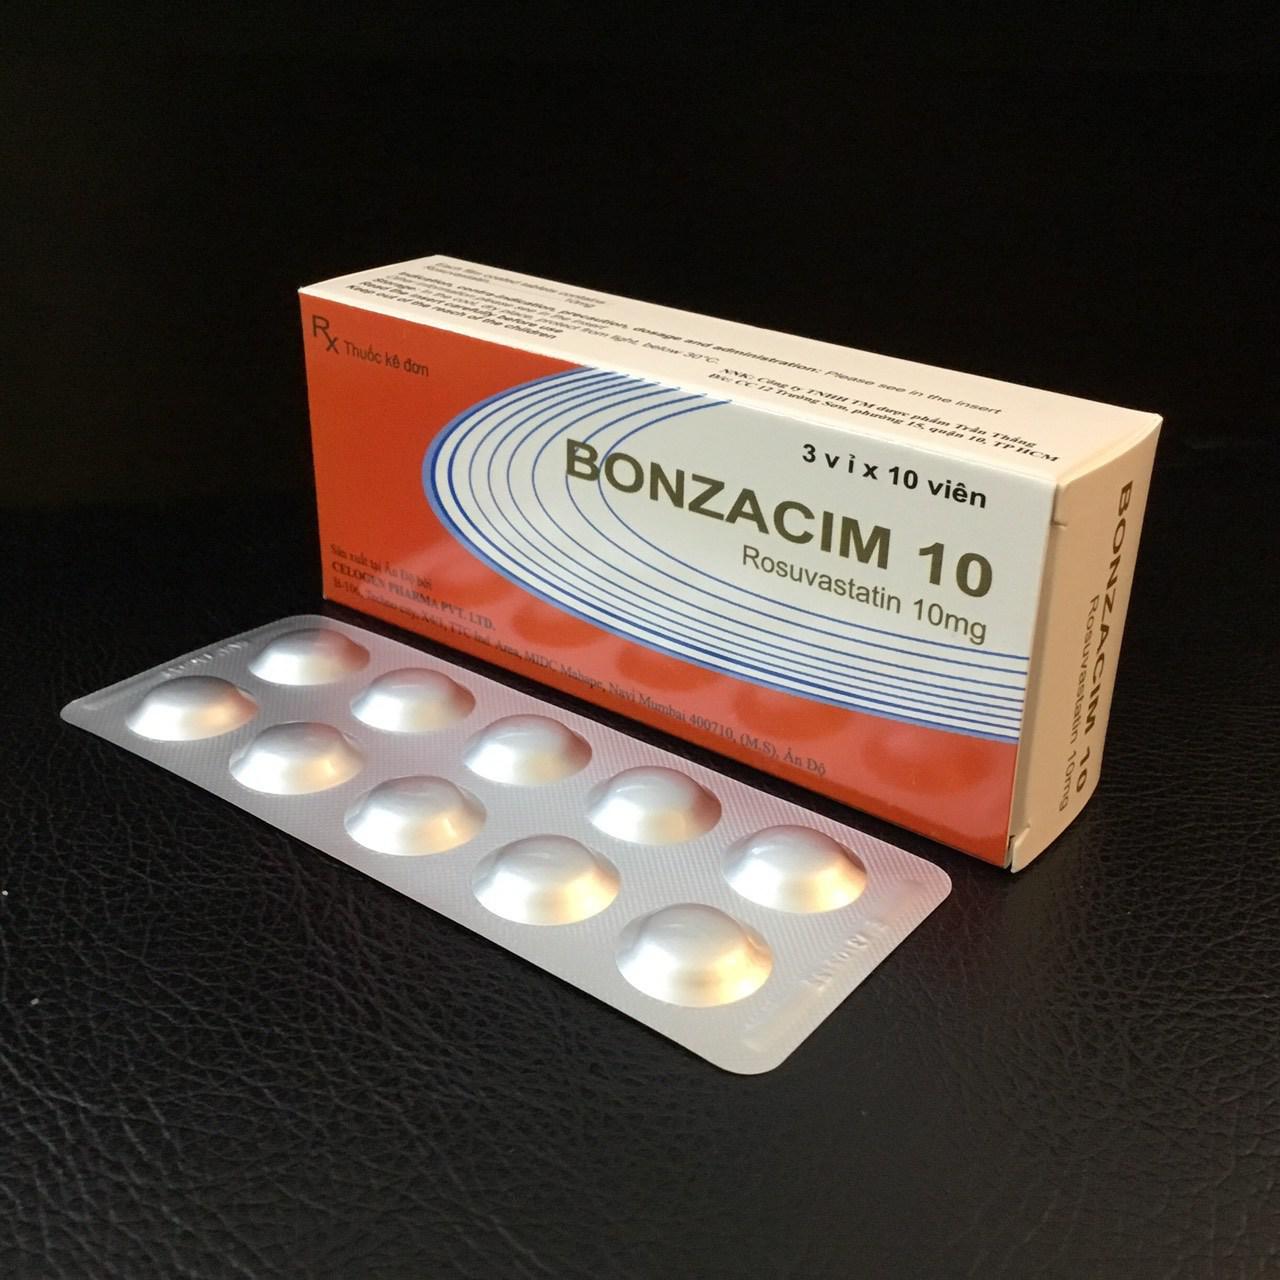 Bonzacim 10 (Rosuvastatin) Celogen (H/30v)